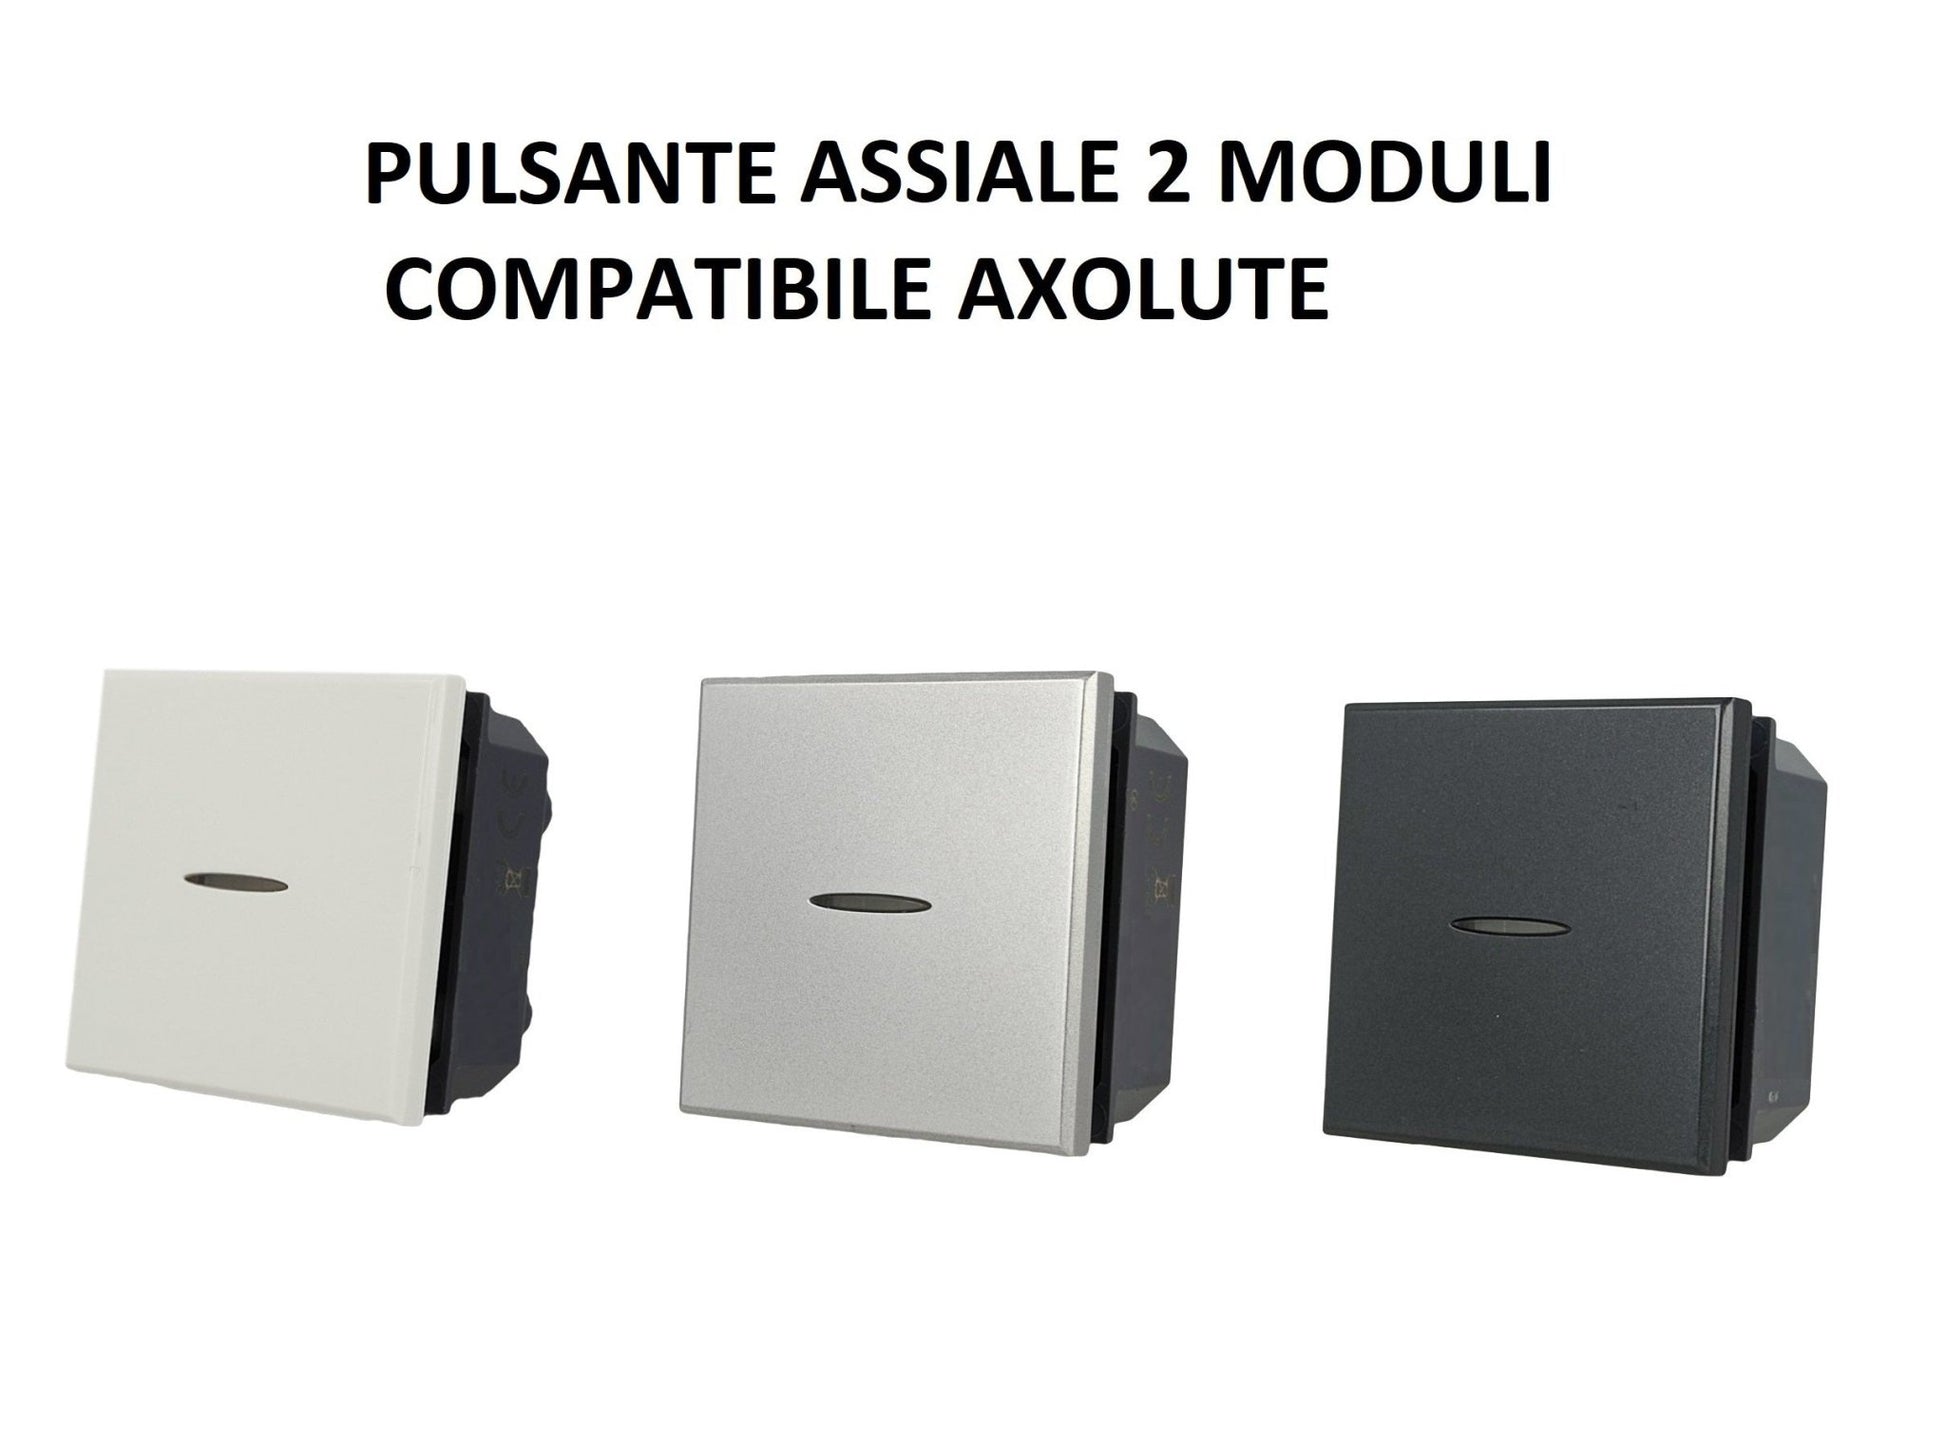 Pulsante Assiale 2M 2 moduli 1P incasso muro Bianco Nero Silver compatibile Bticino Axolute - puntoluceled